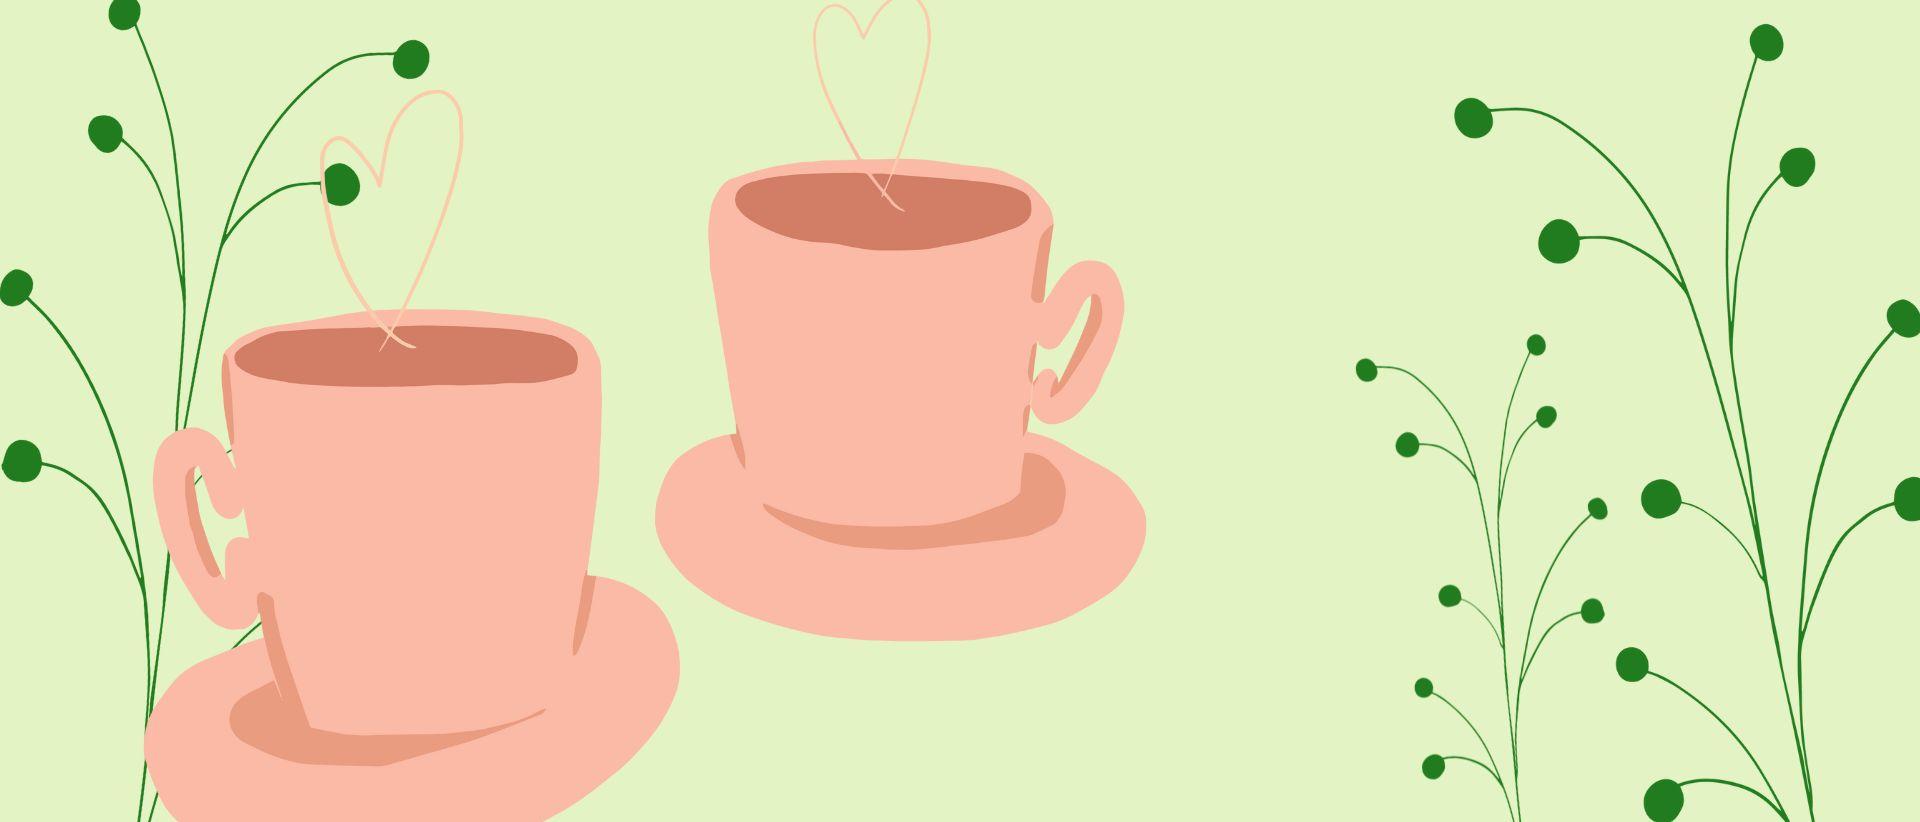 Piirroskuvia: 2 vaaleanpunaista kahvikuppia, joista höyry muodostaa sydämet, kesän tummanvihreitä kasveja, vaaleanvihreä tausta.